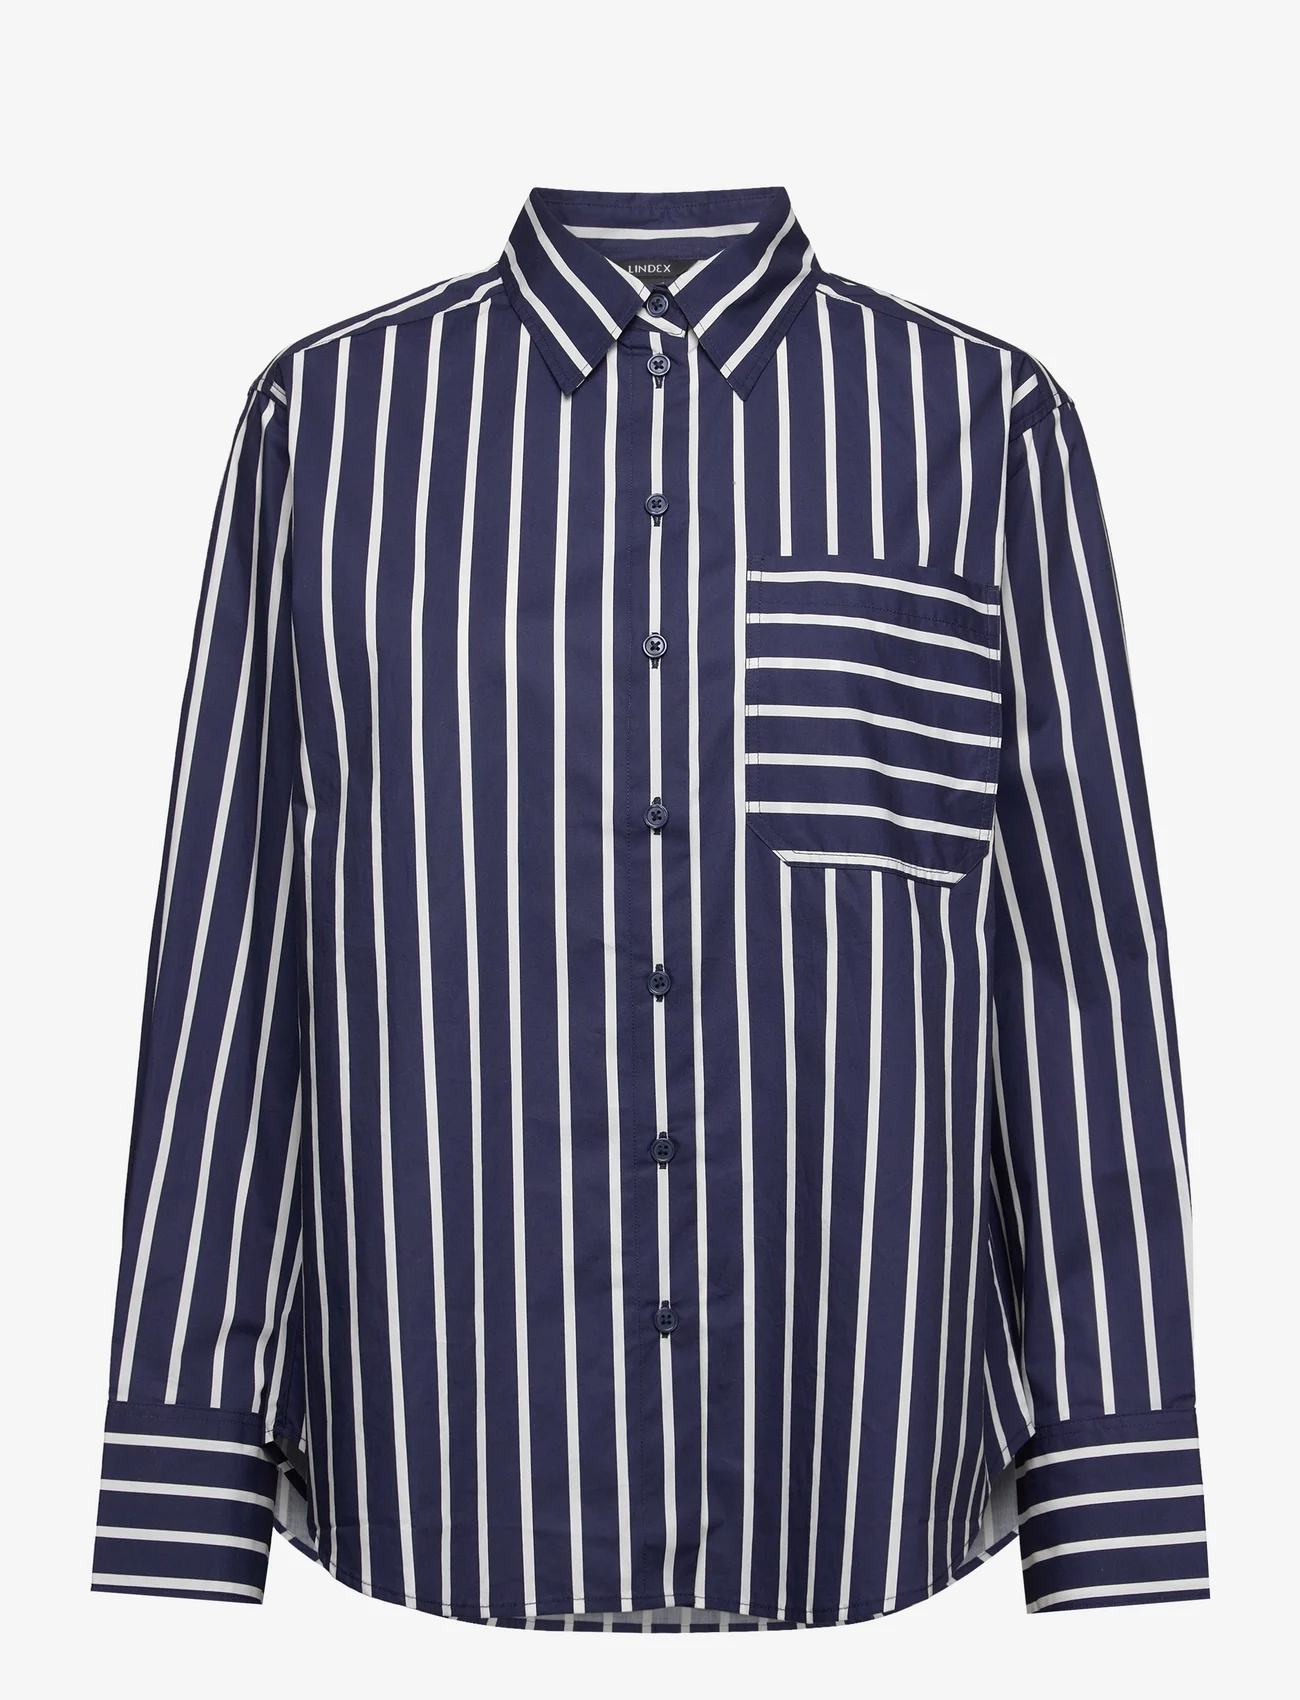 Lindex - Shirt April - langærmede skjorter - dark blue - 0